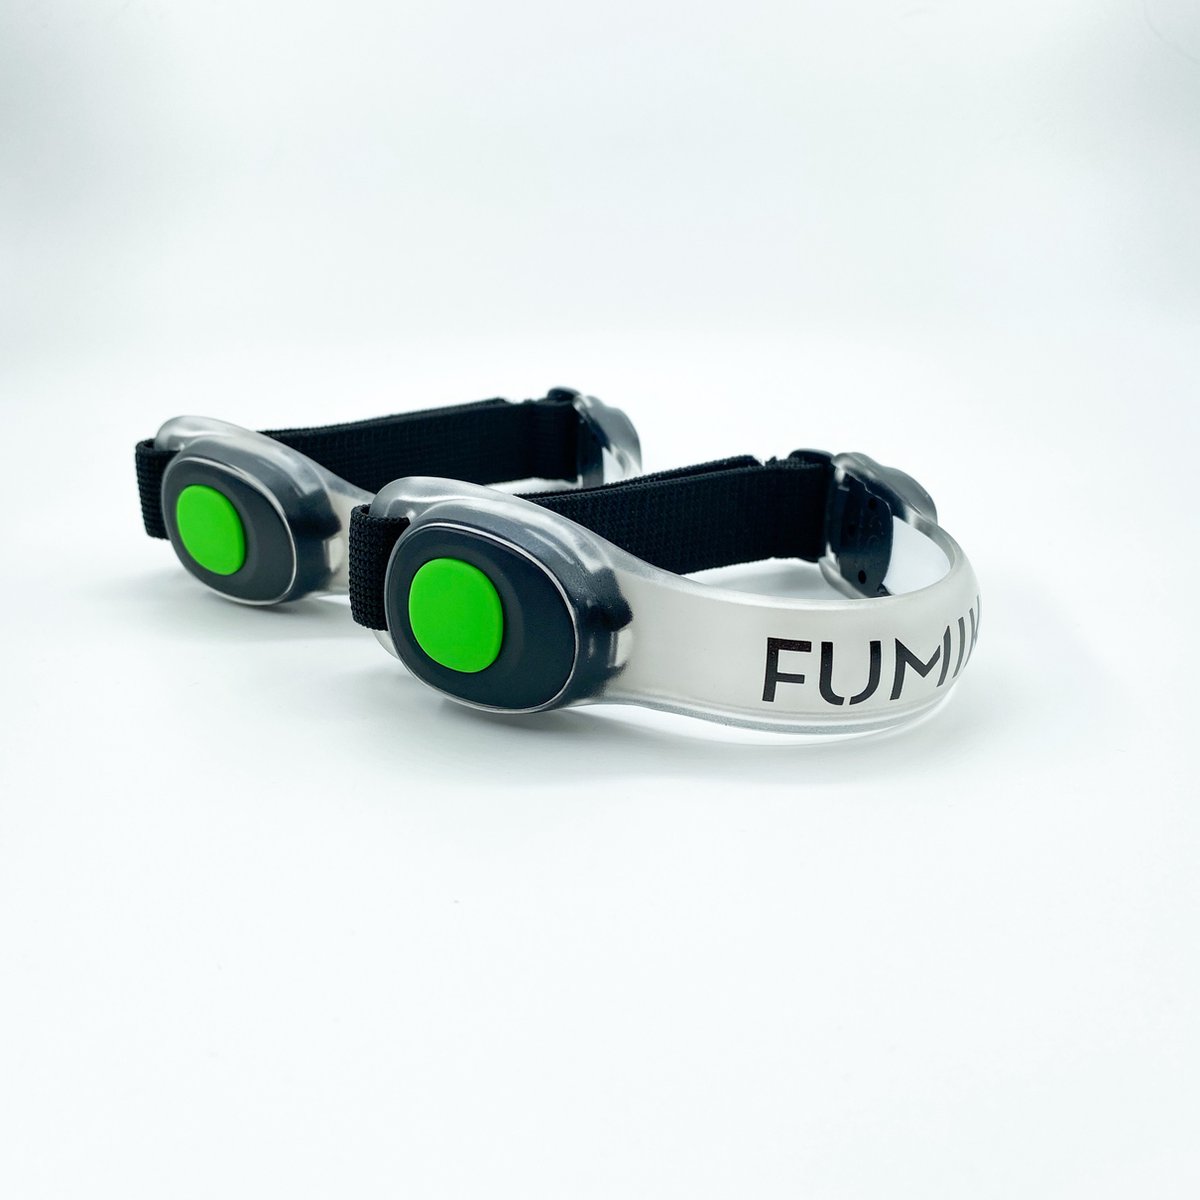 FUMIKO - Hardloop verlichting - LED Lampjes inclusief Batterijen - Waterafstotend - Groen - 2 stuks